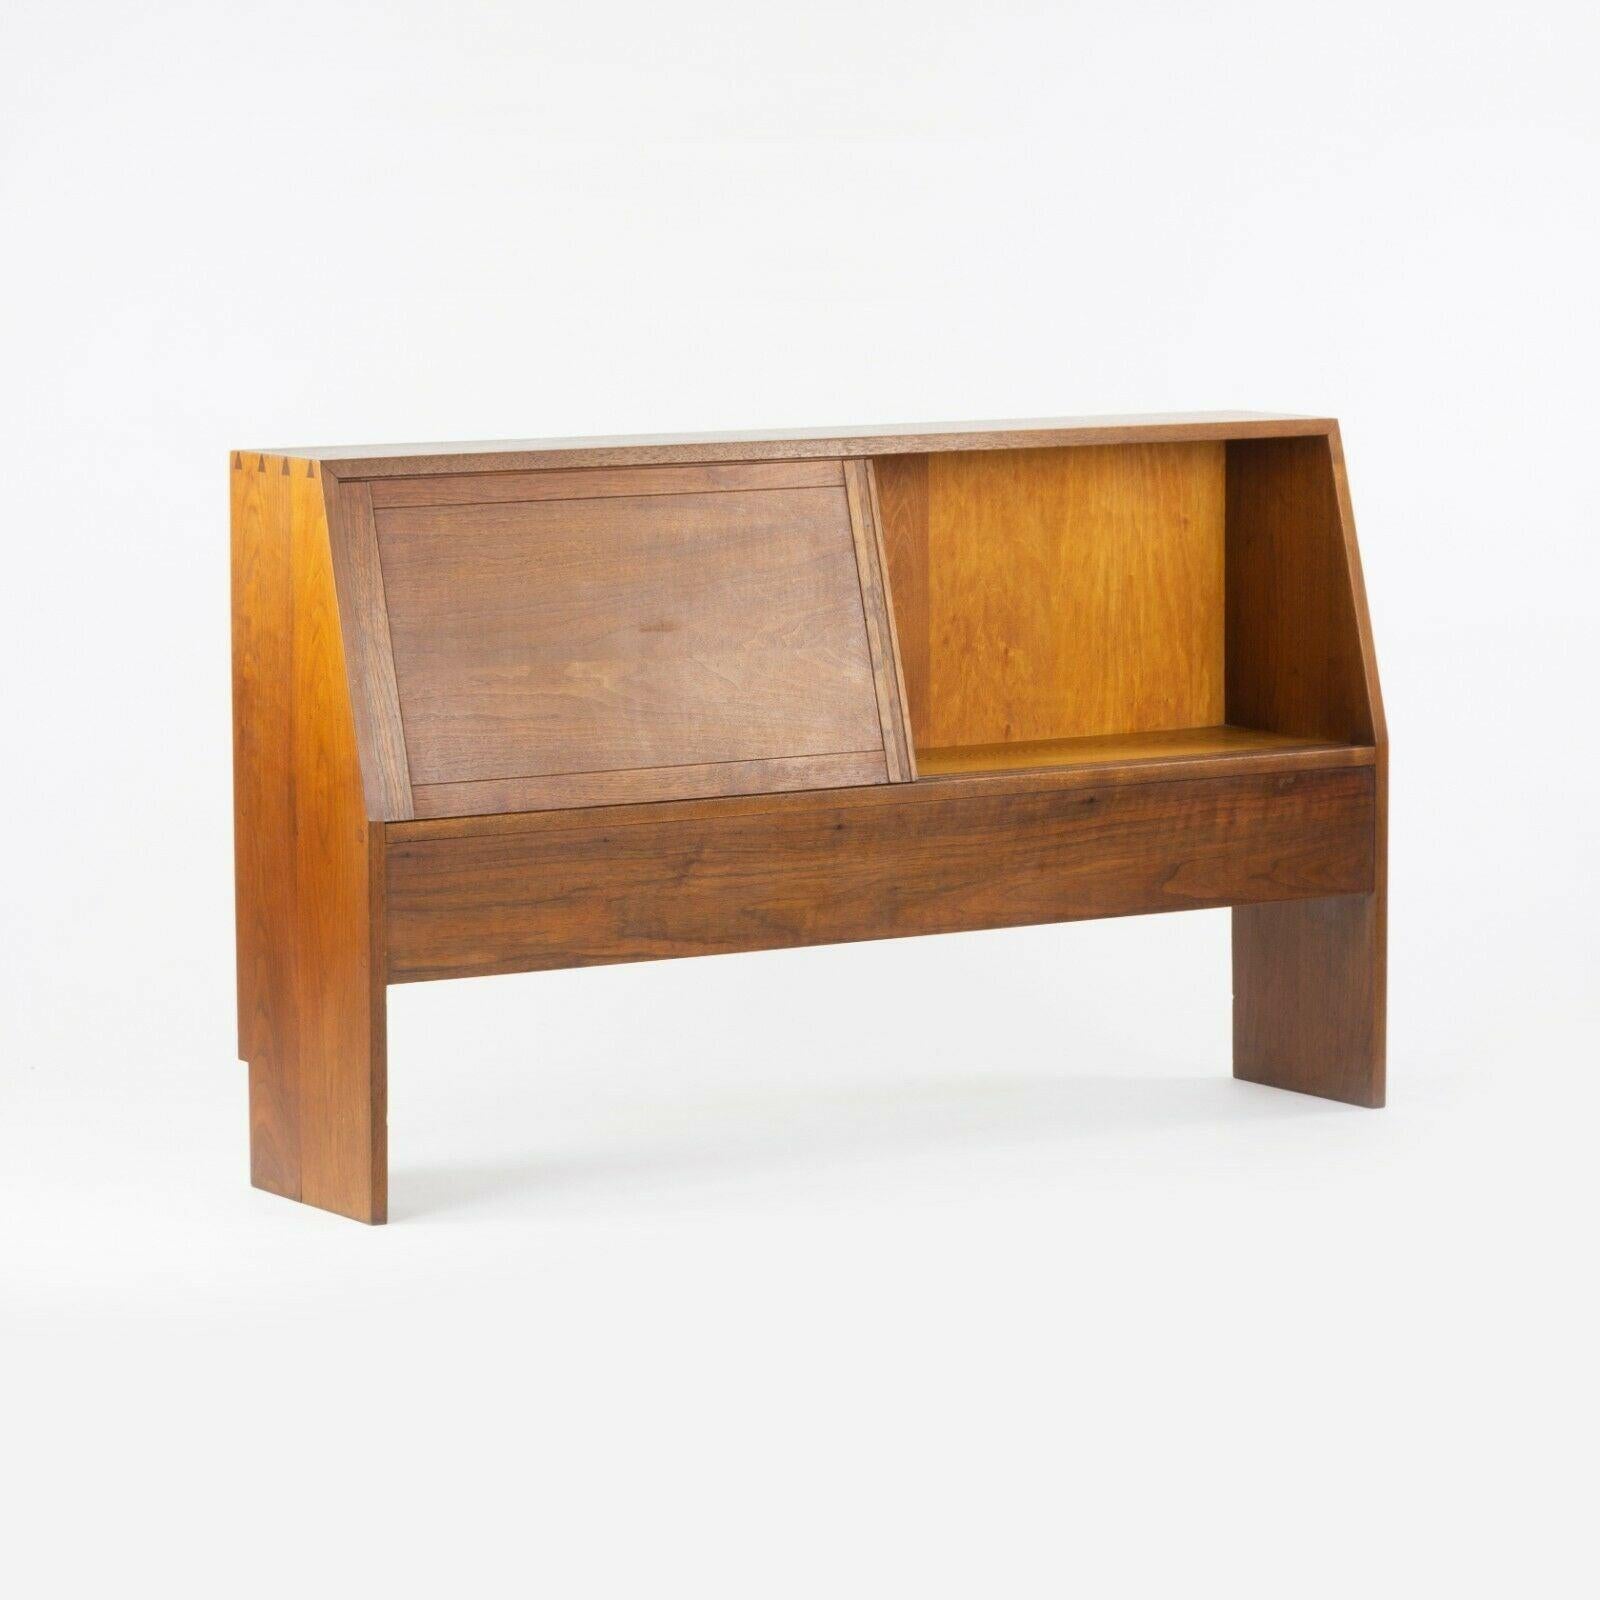 Nous proposons à la vente une tête de lit très spéciale de George Nakashima datant des années 1950, produite dans le studio de Nakashima Woodworking à New Hope, en Pennsylvanie. Ce superbe exemplaire original est la variante avec un compartiment de